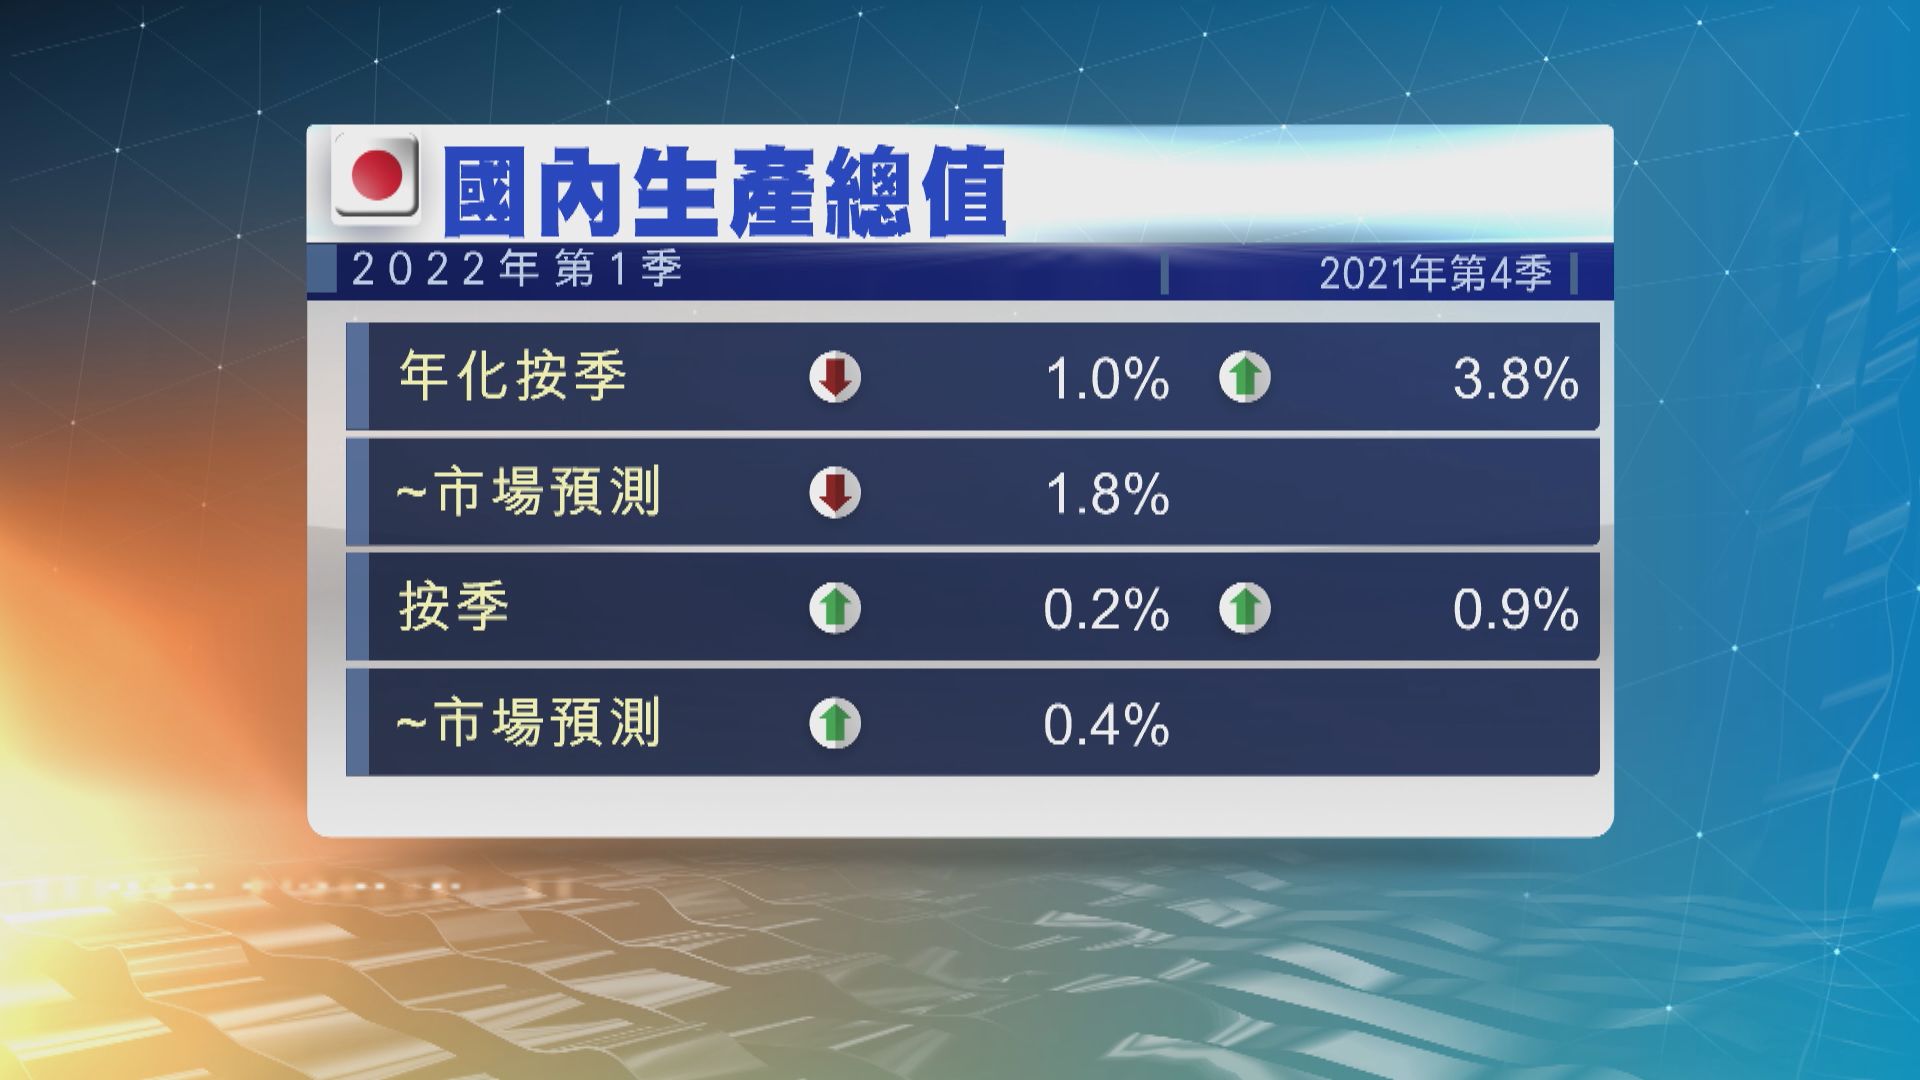 日本第一季經濟萎縮1% 